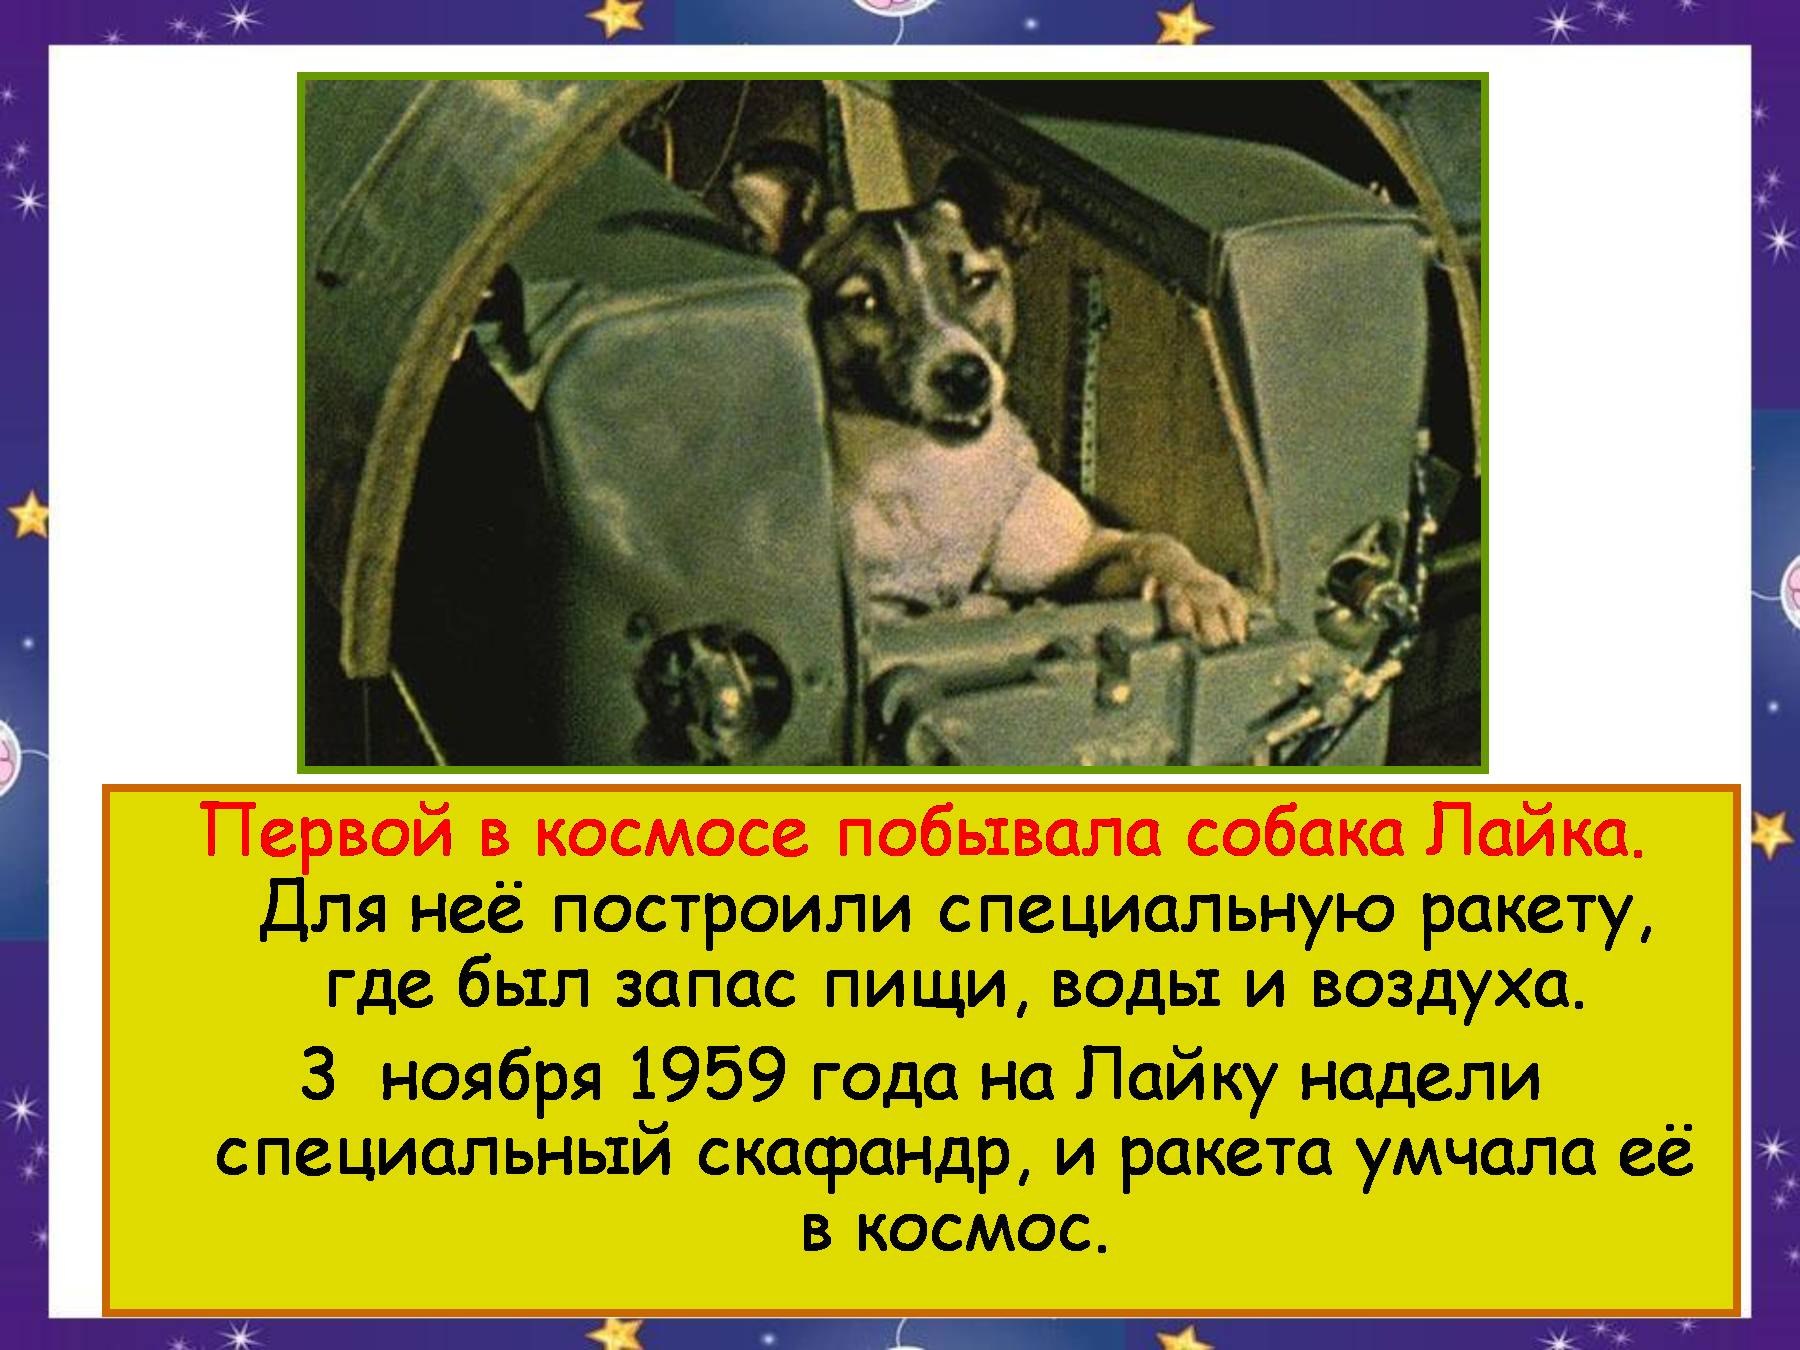 Первым в космосе была собака. Лайка первая собака которая полетела в космос. Собаки в космосе презентация. Собака лайка побывавшая в космосе. Лайка в космосе презентация.